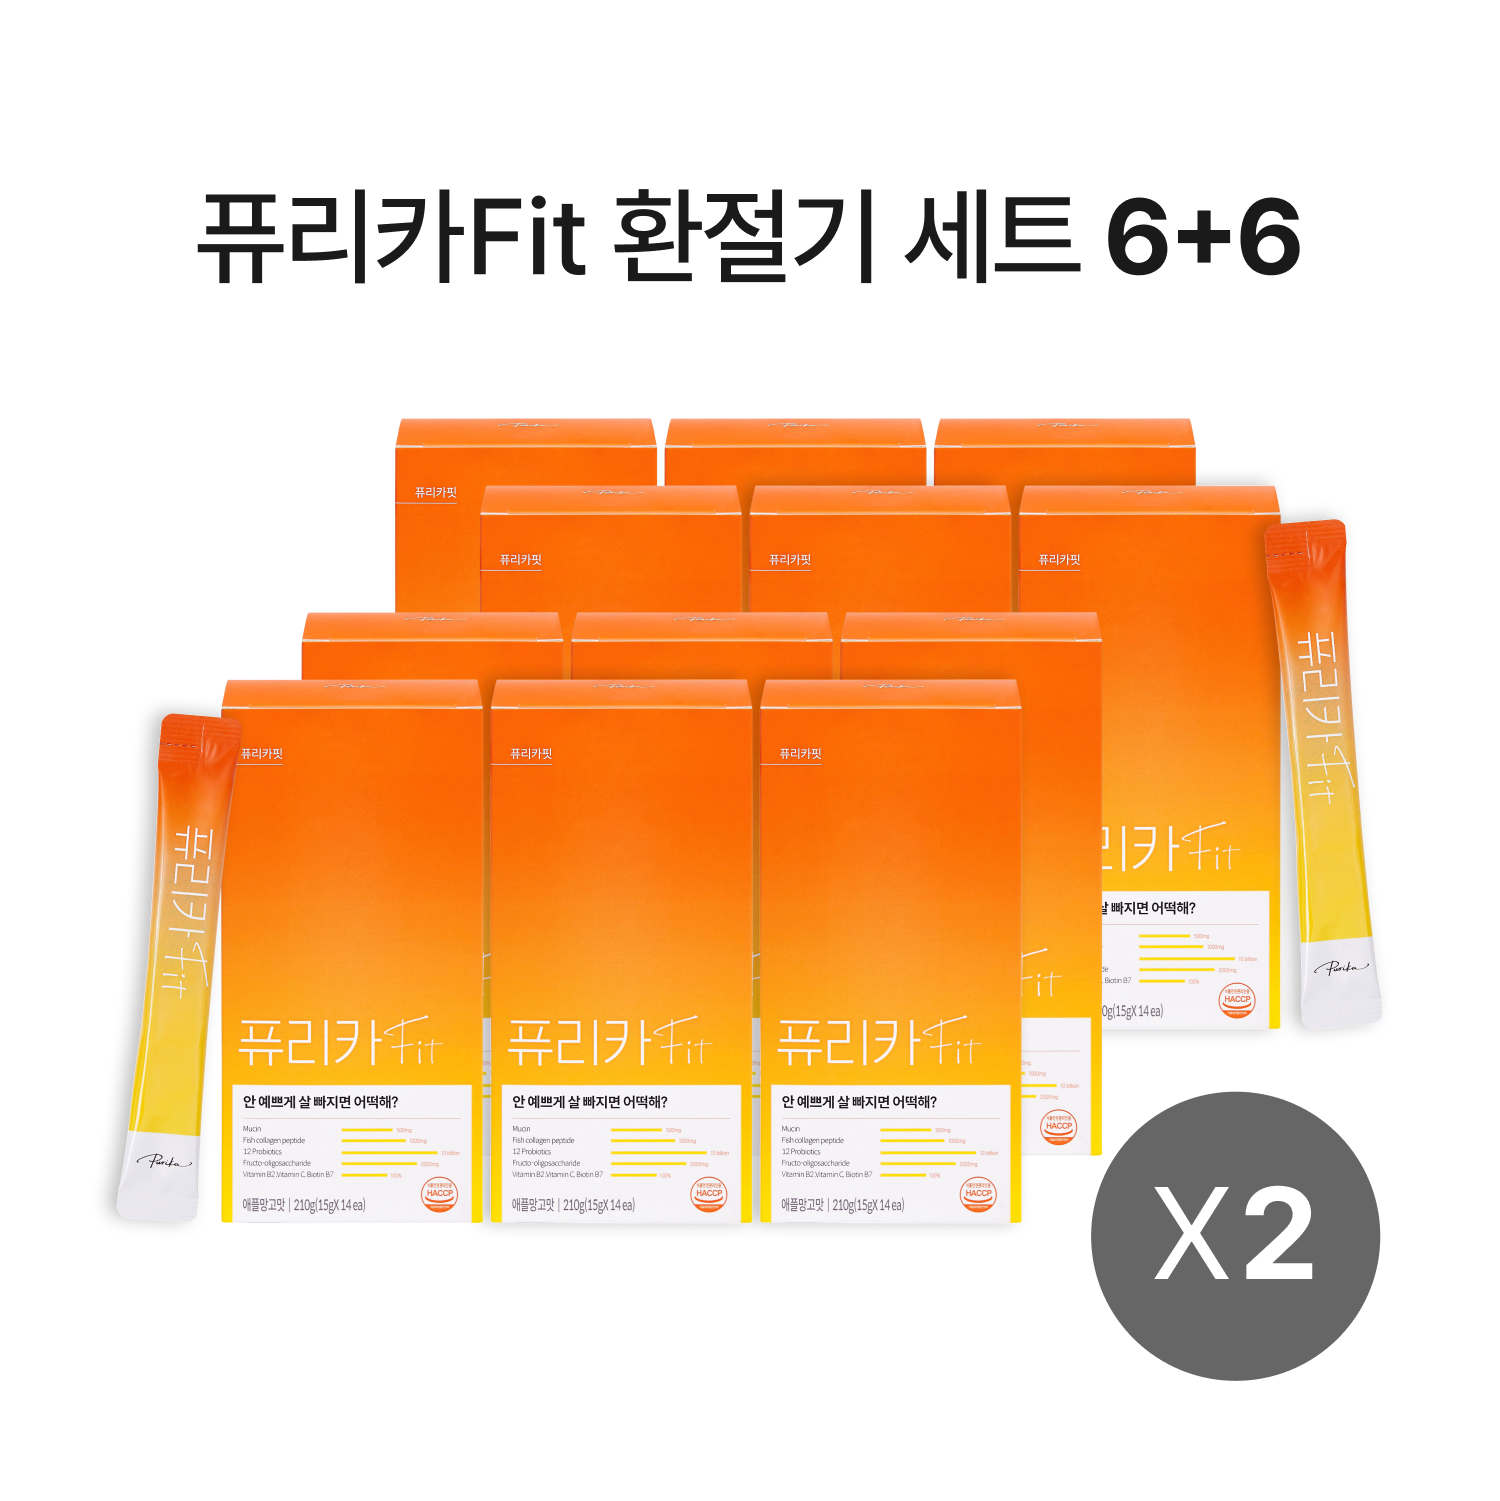 [기간한정] 퓨리카Fit 6+6 세트 (12box,6개월)